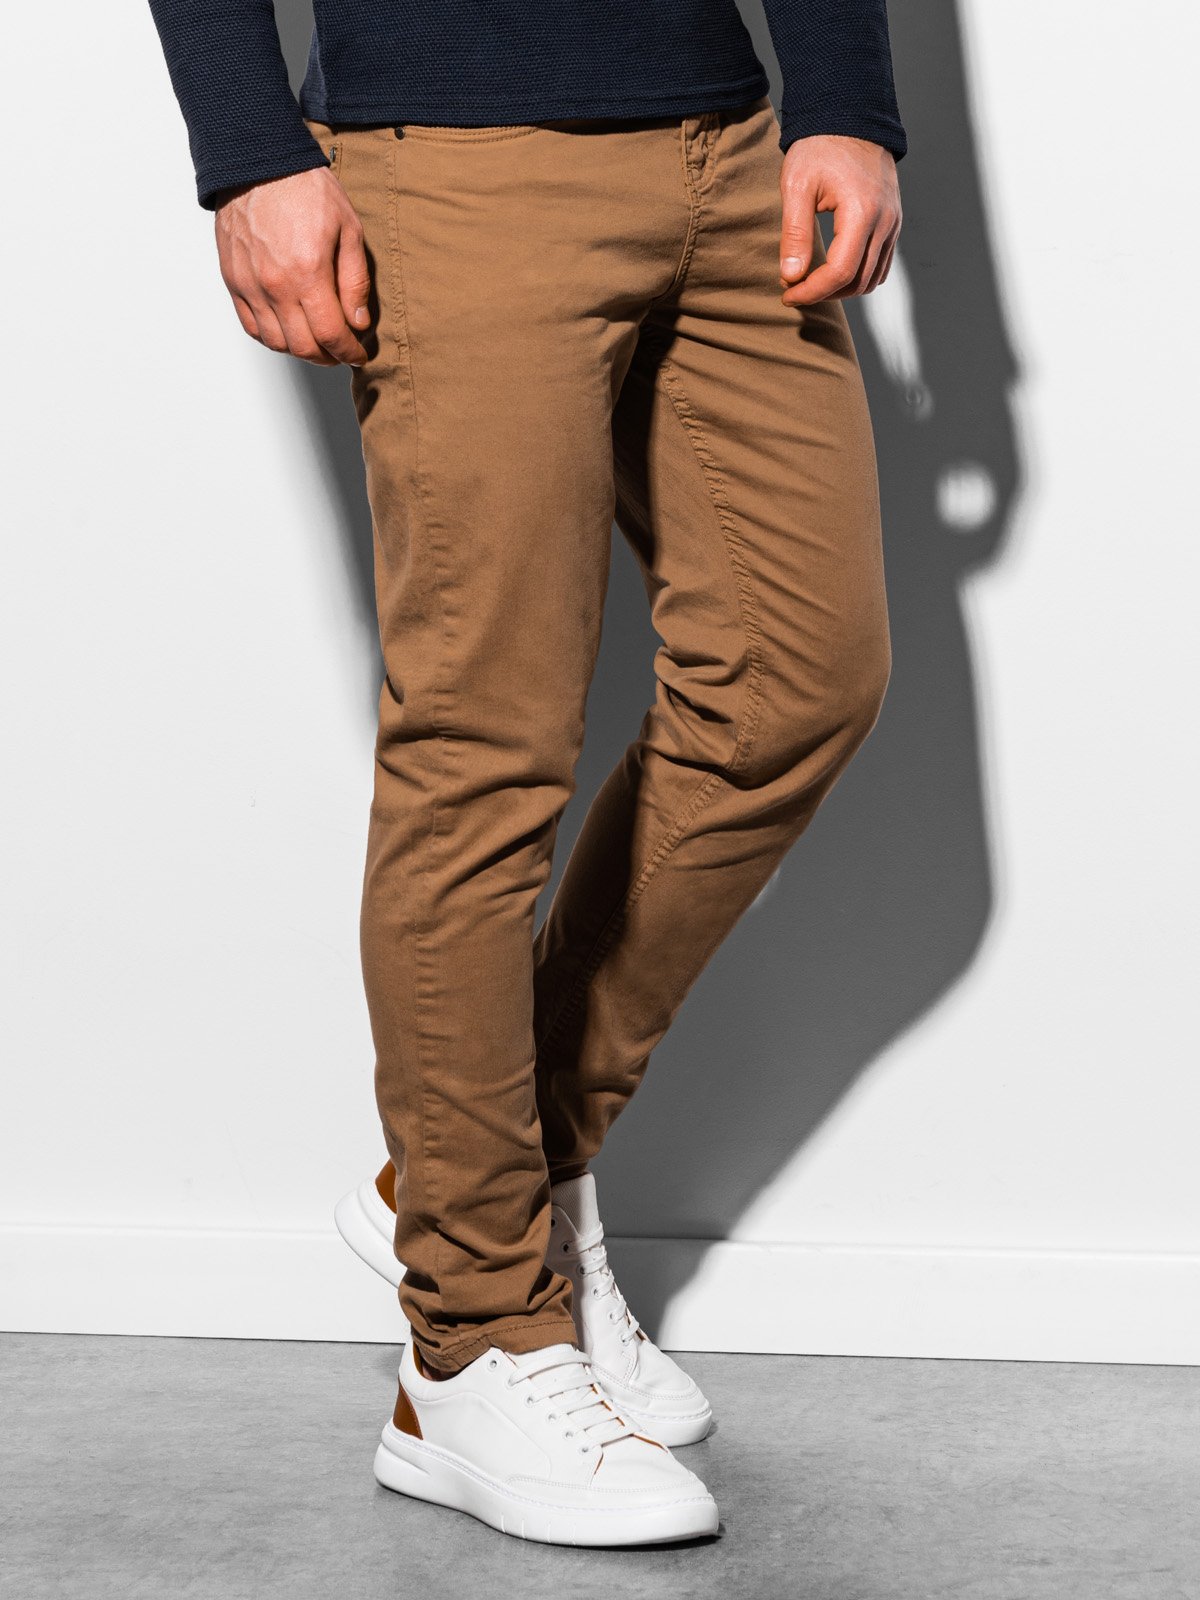 Men's pants - camel P895  MODONE wholesale - Clothing For Men